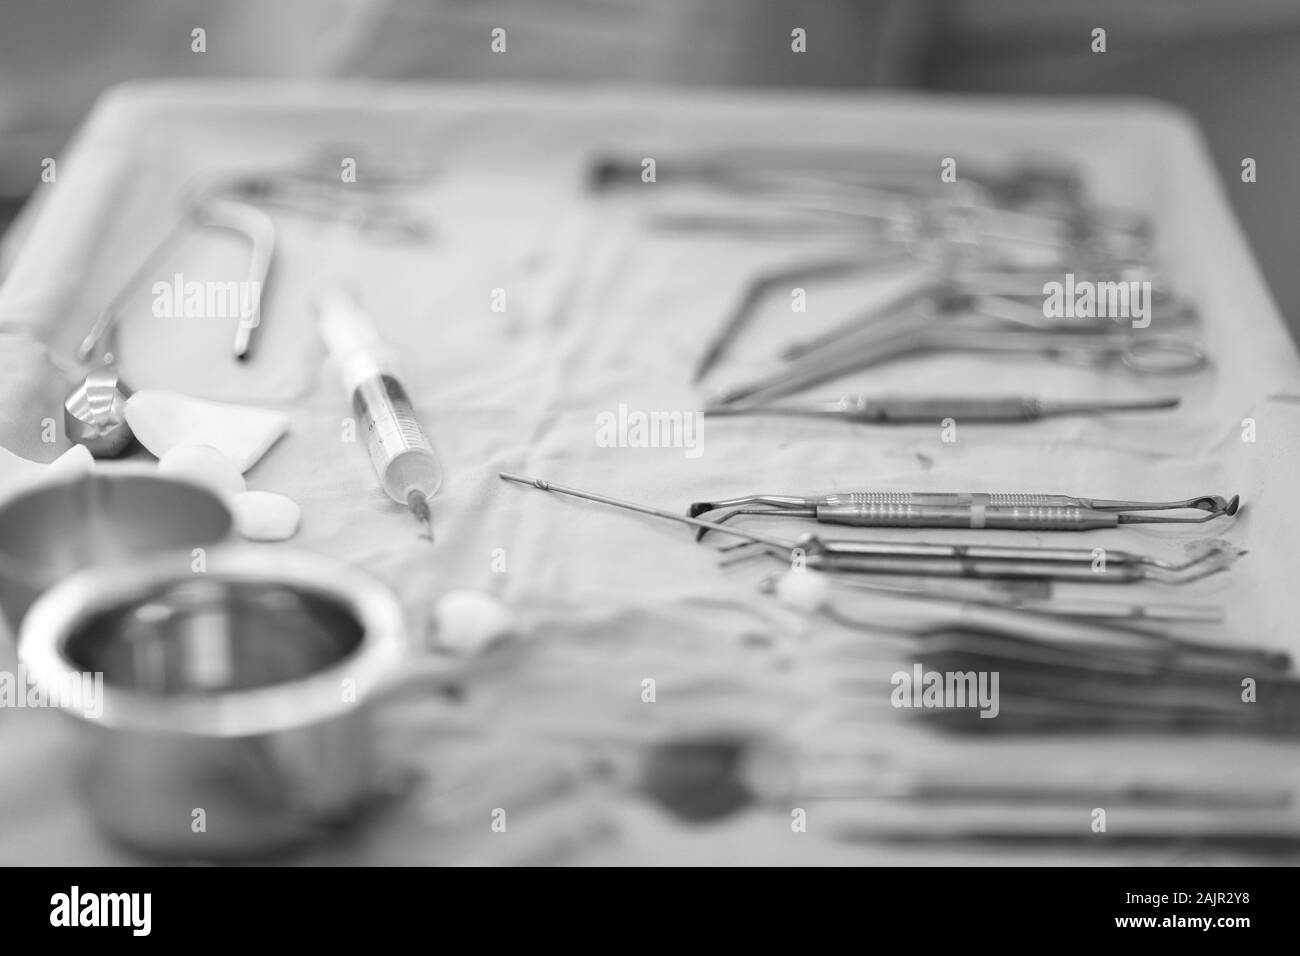 Table avec un ensemble d'instruments de chirurgie dentaire dans la salle d'opération Banque D'Images